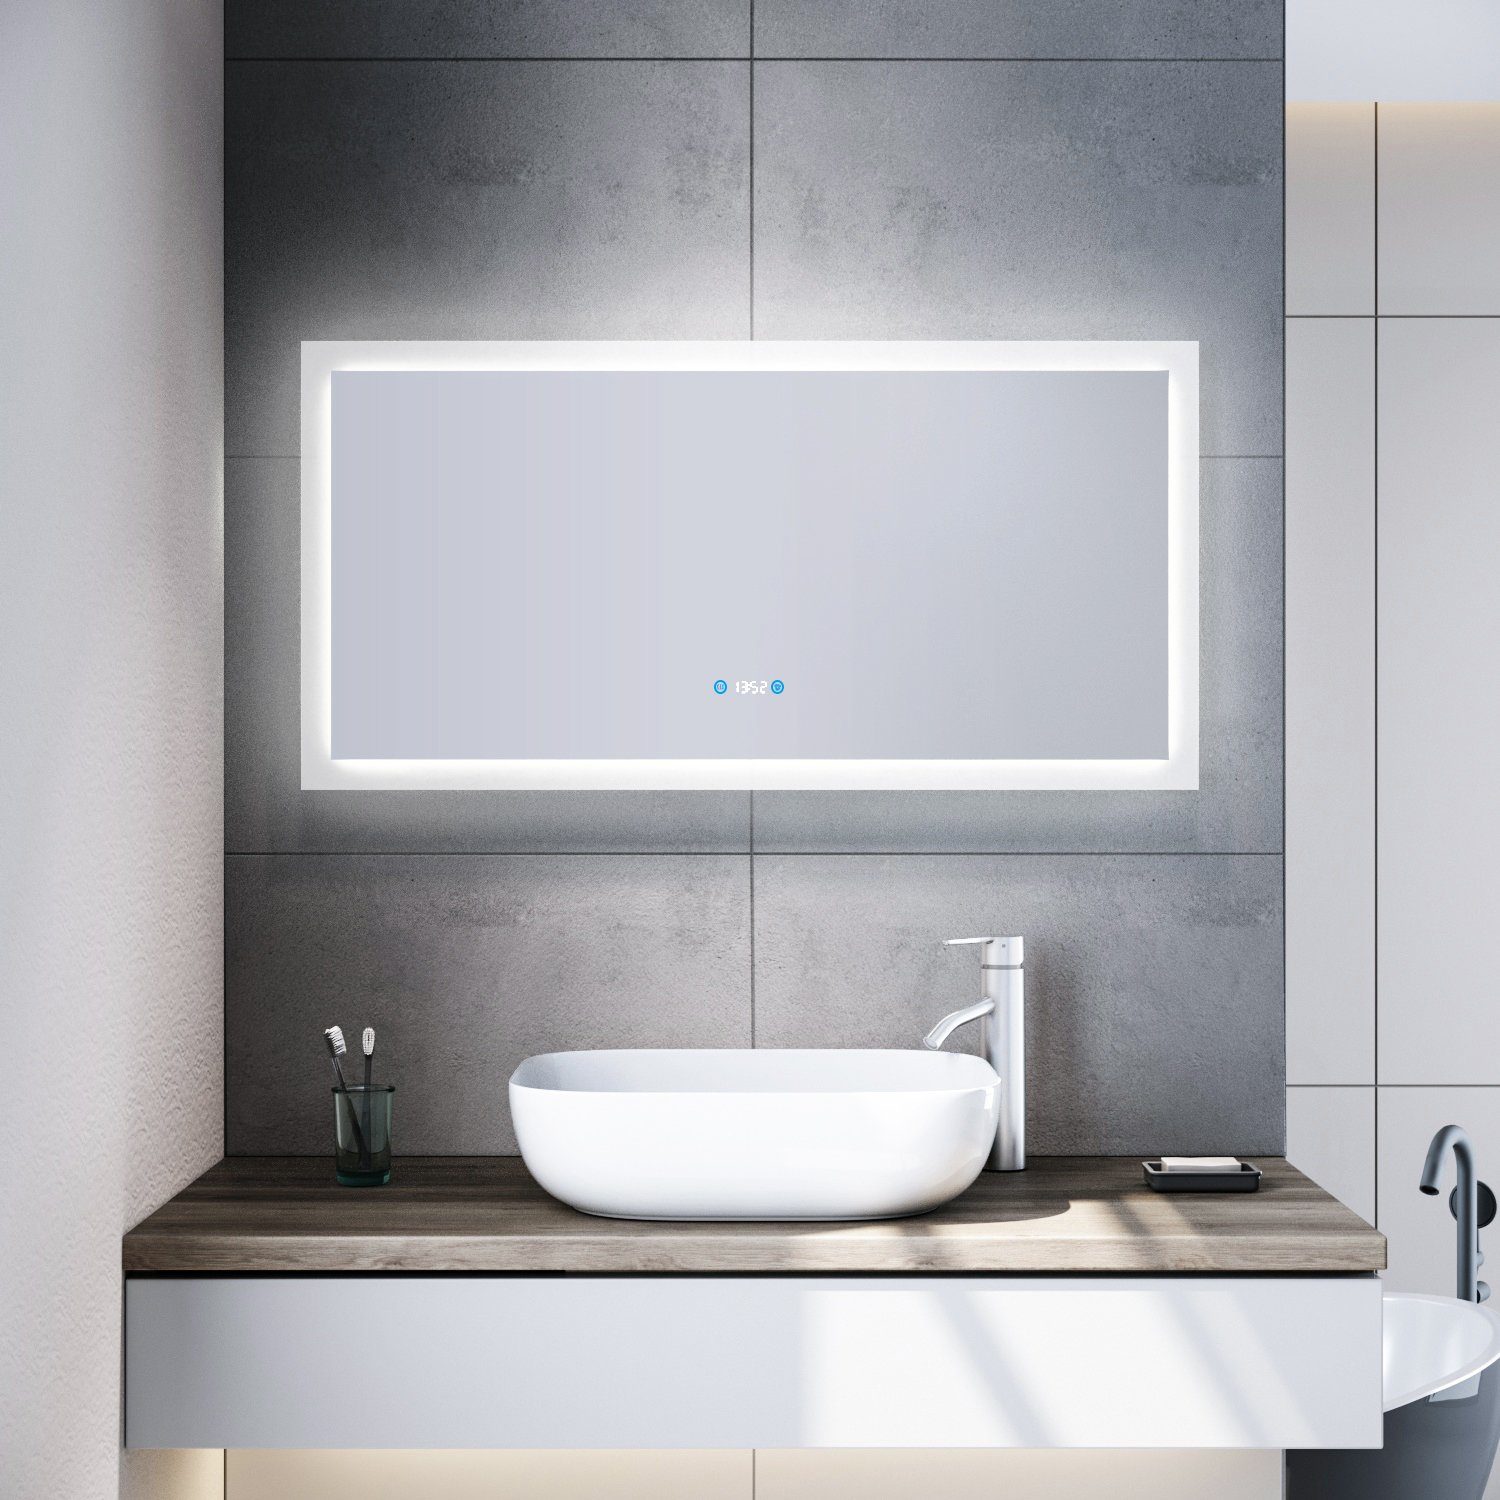 SONNI Badspiegel mit led cm 120x60 Badspiegel Beschlagfrei,Touch,Uhr,Temperaturanzeige beleuchtung Beschlagfrei